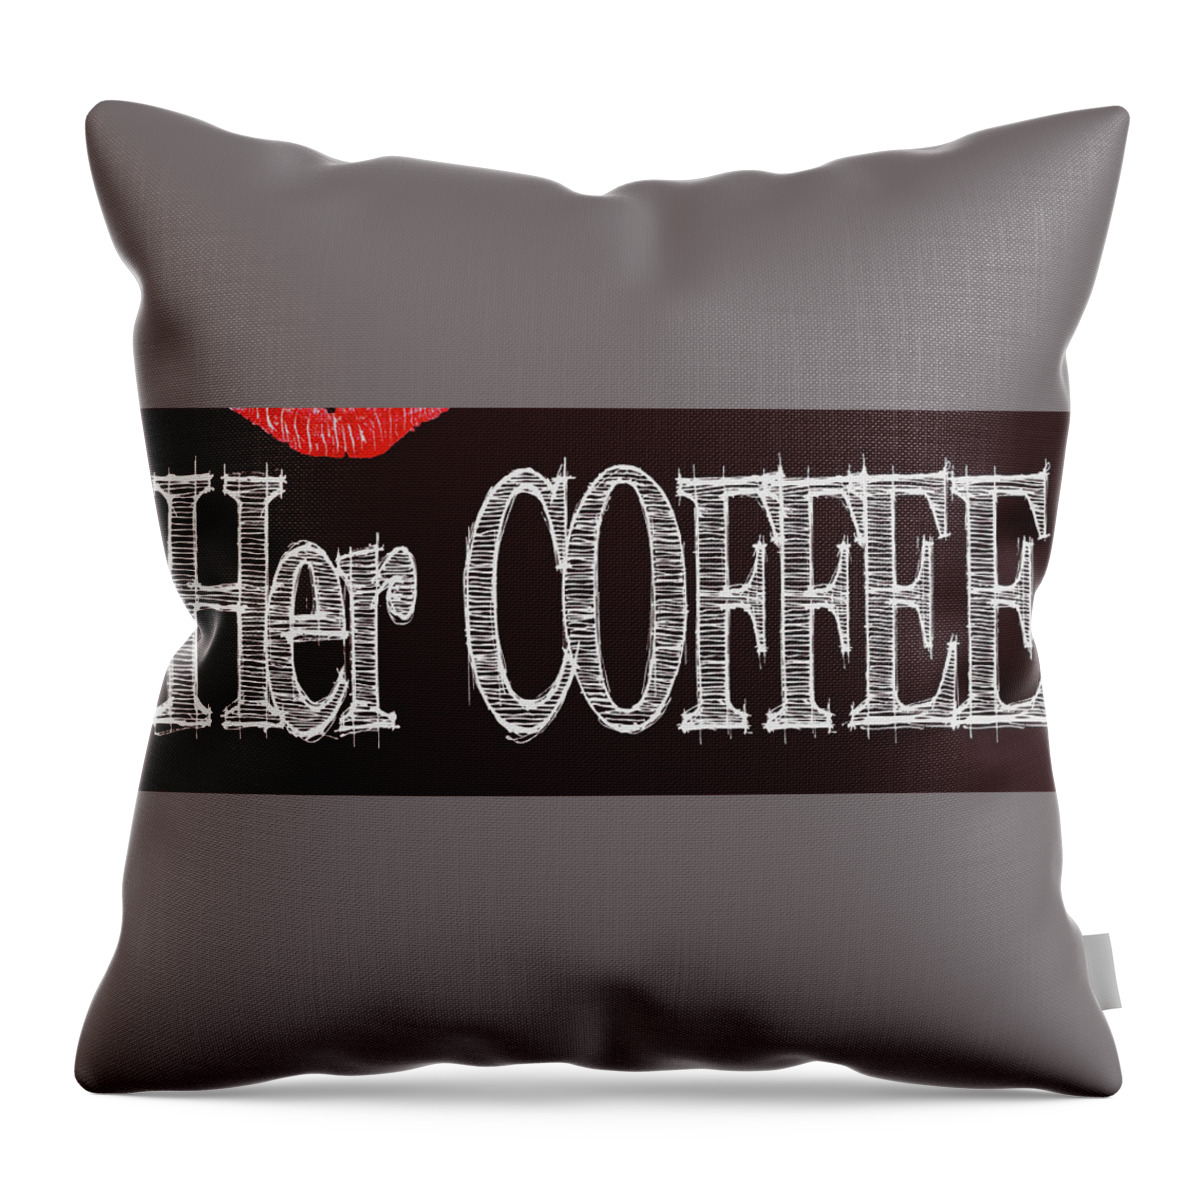  Throw Pillow featuring the digital art Her COFFEE Mug 2 by Robert J Sadler